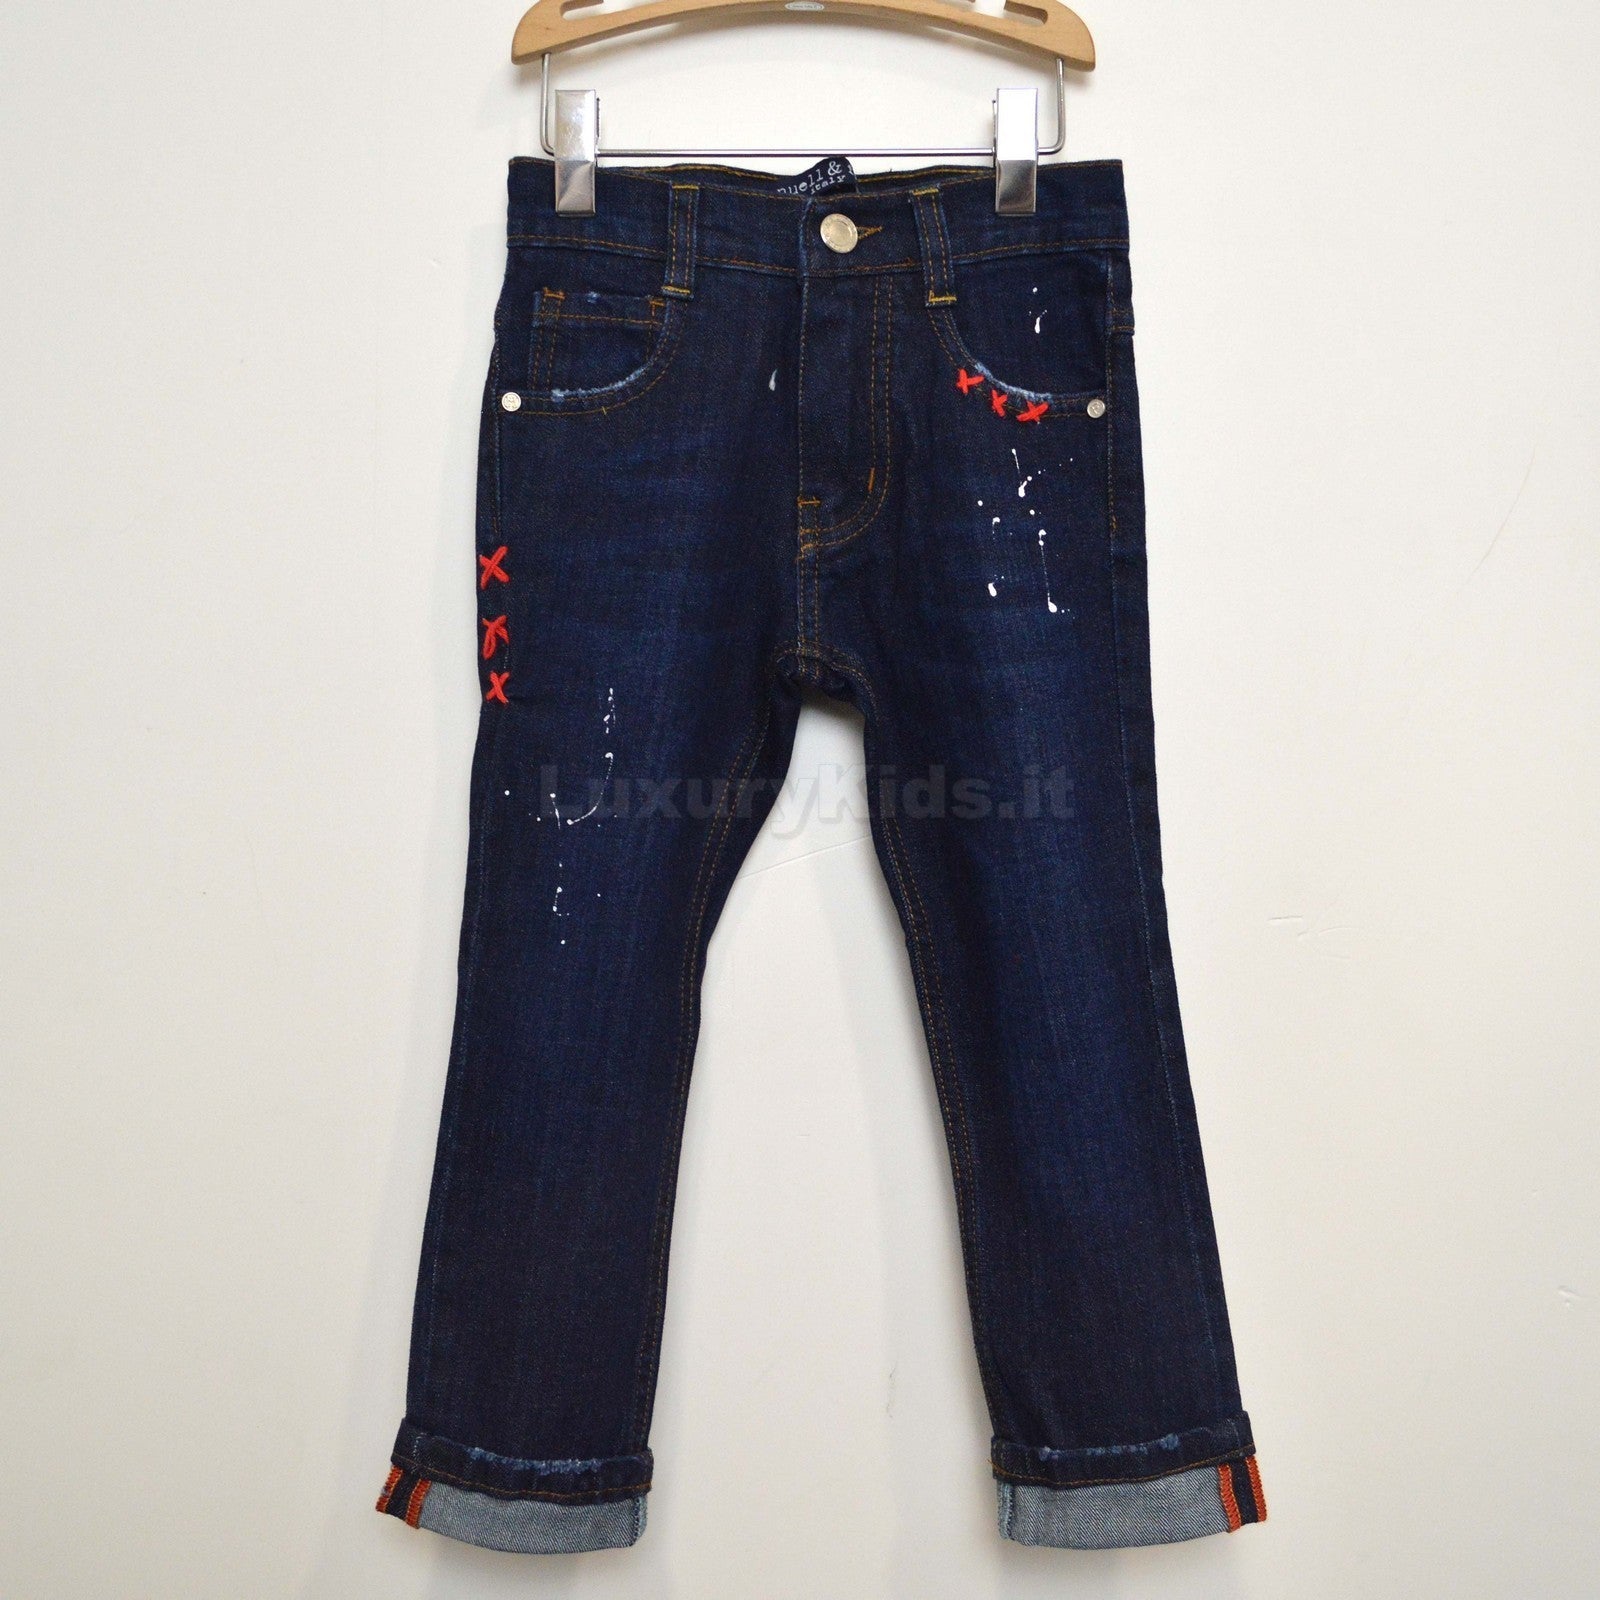 Jeans Scuro in Caldo Cotone Denim con Macchie di Pittura per Bambino Manuell&Frank MF1015B - MANUELL&FRANK - LuxuryKids